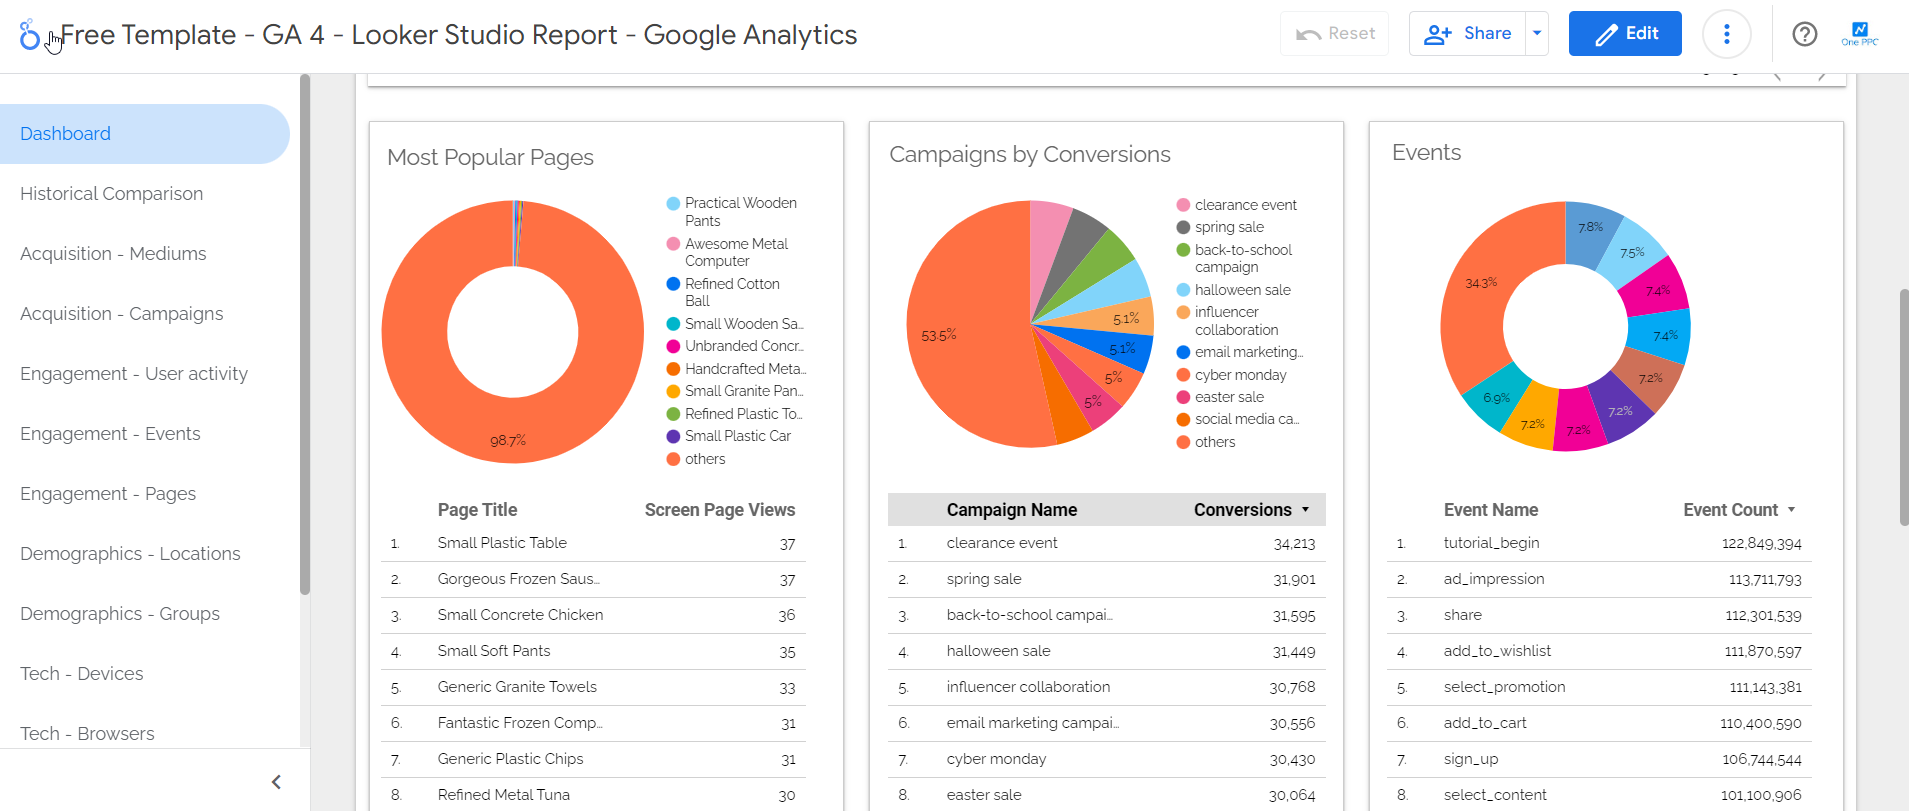 Looker Studio Template Google Analytics